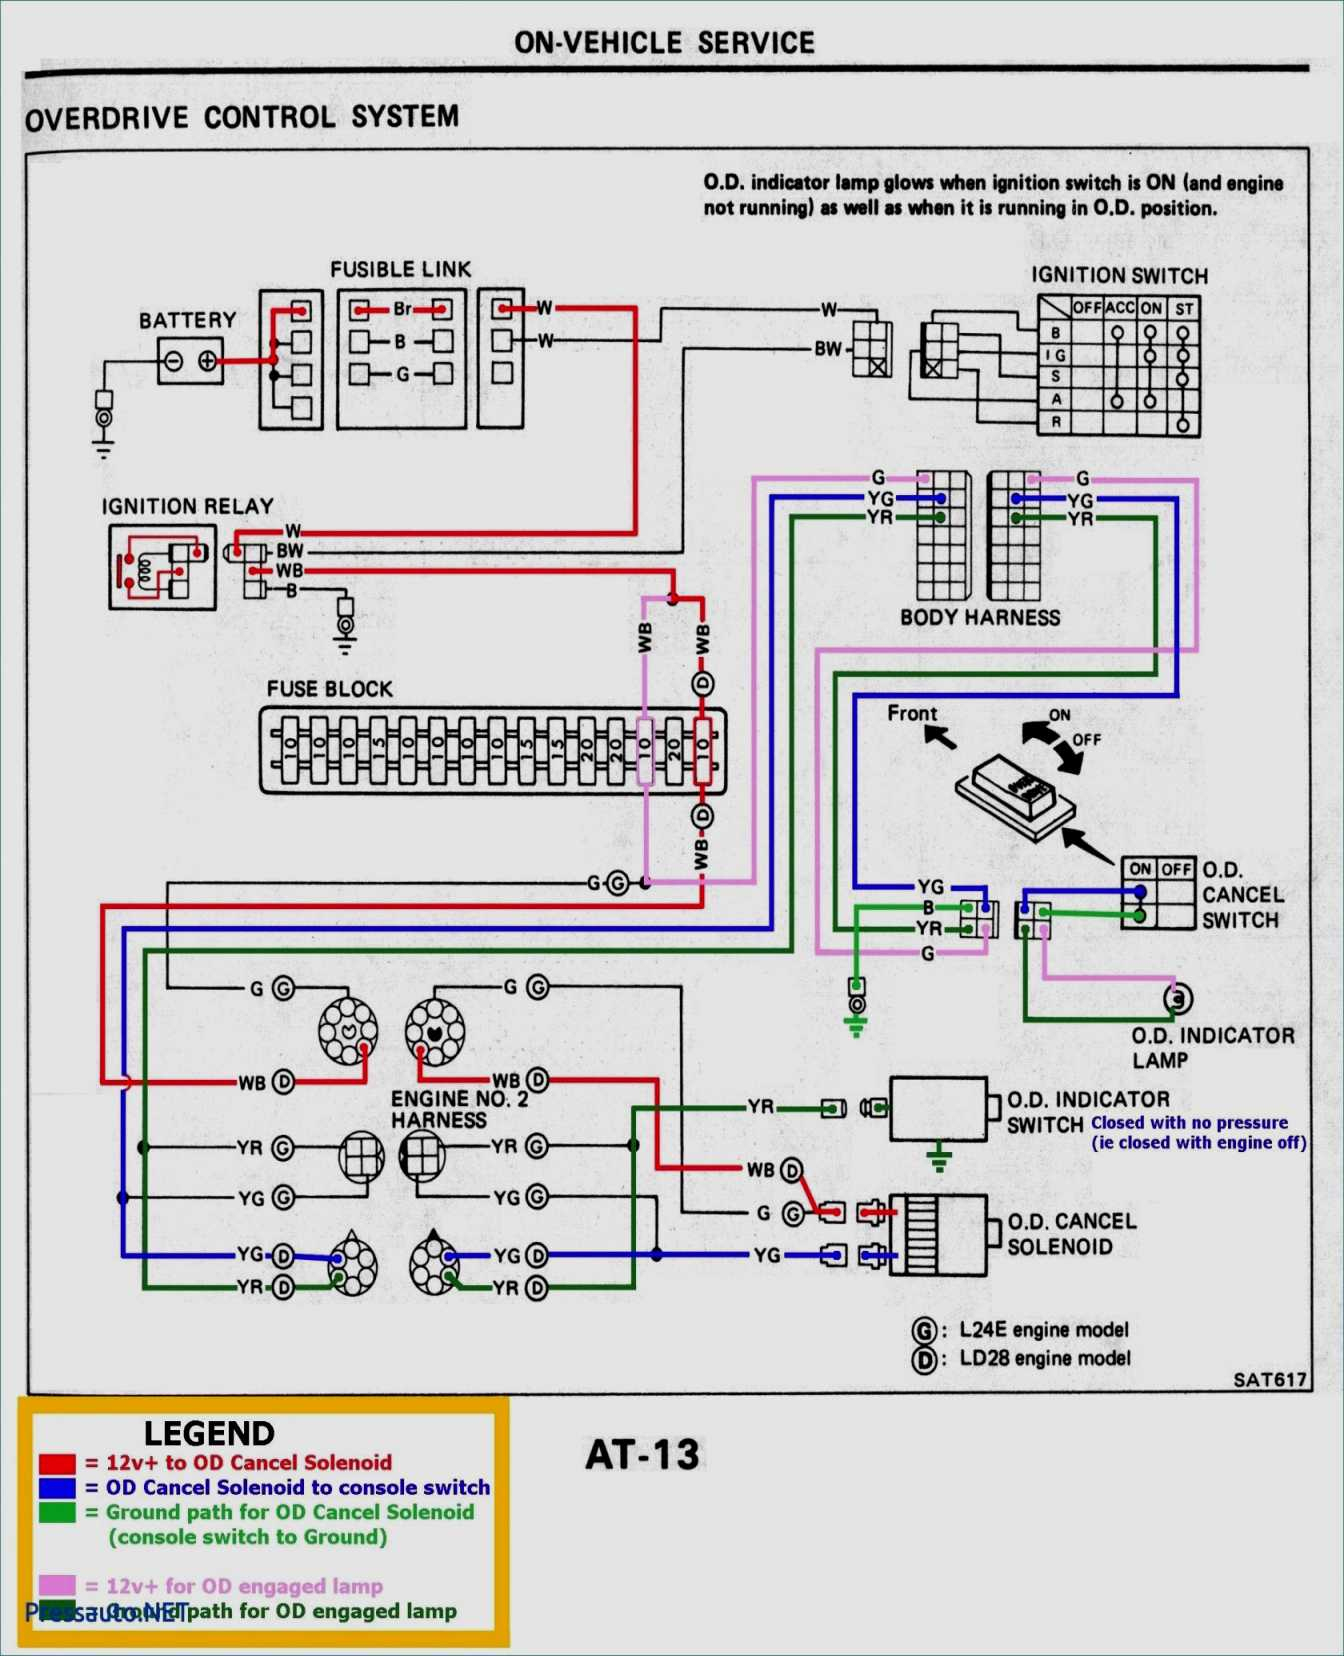 Warn Winch Remote Wiring Diagram Free Download - All Wiring Diagram - Warn Winch Wiring Diagram 4 Solenoid